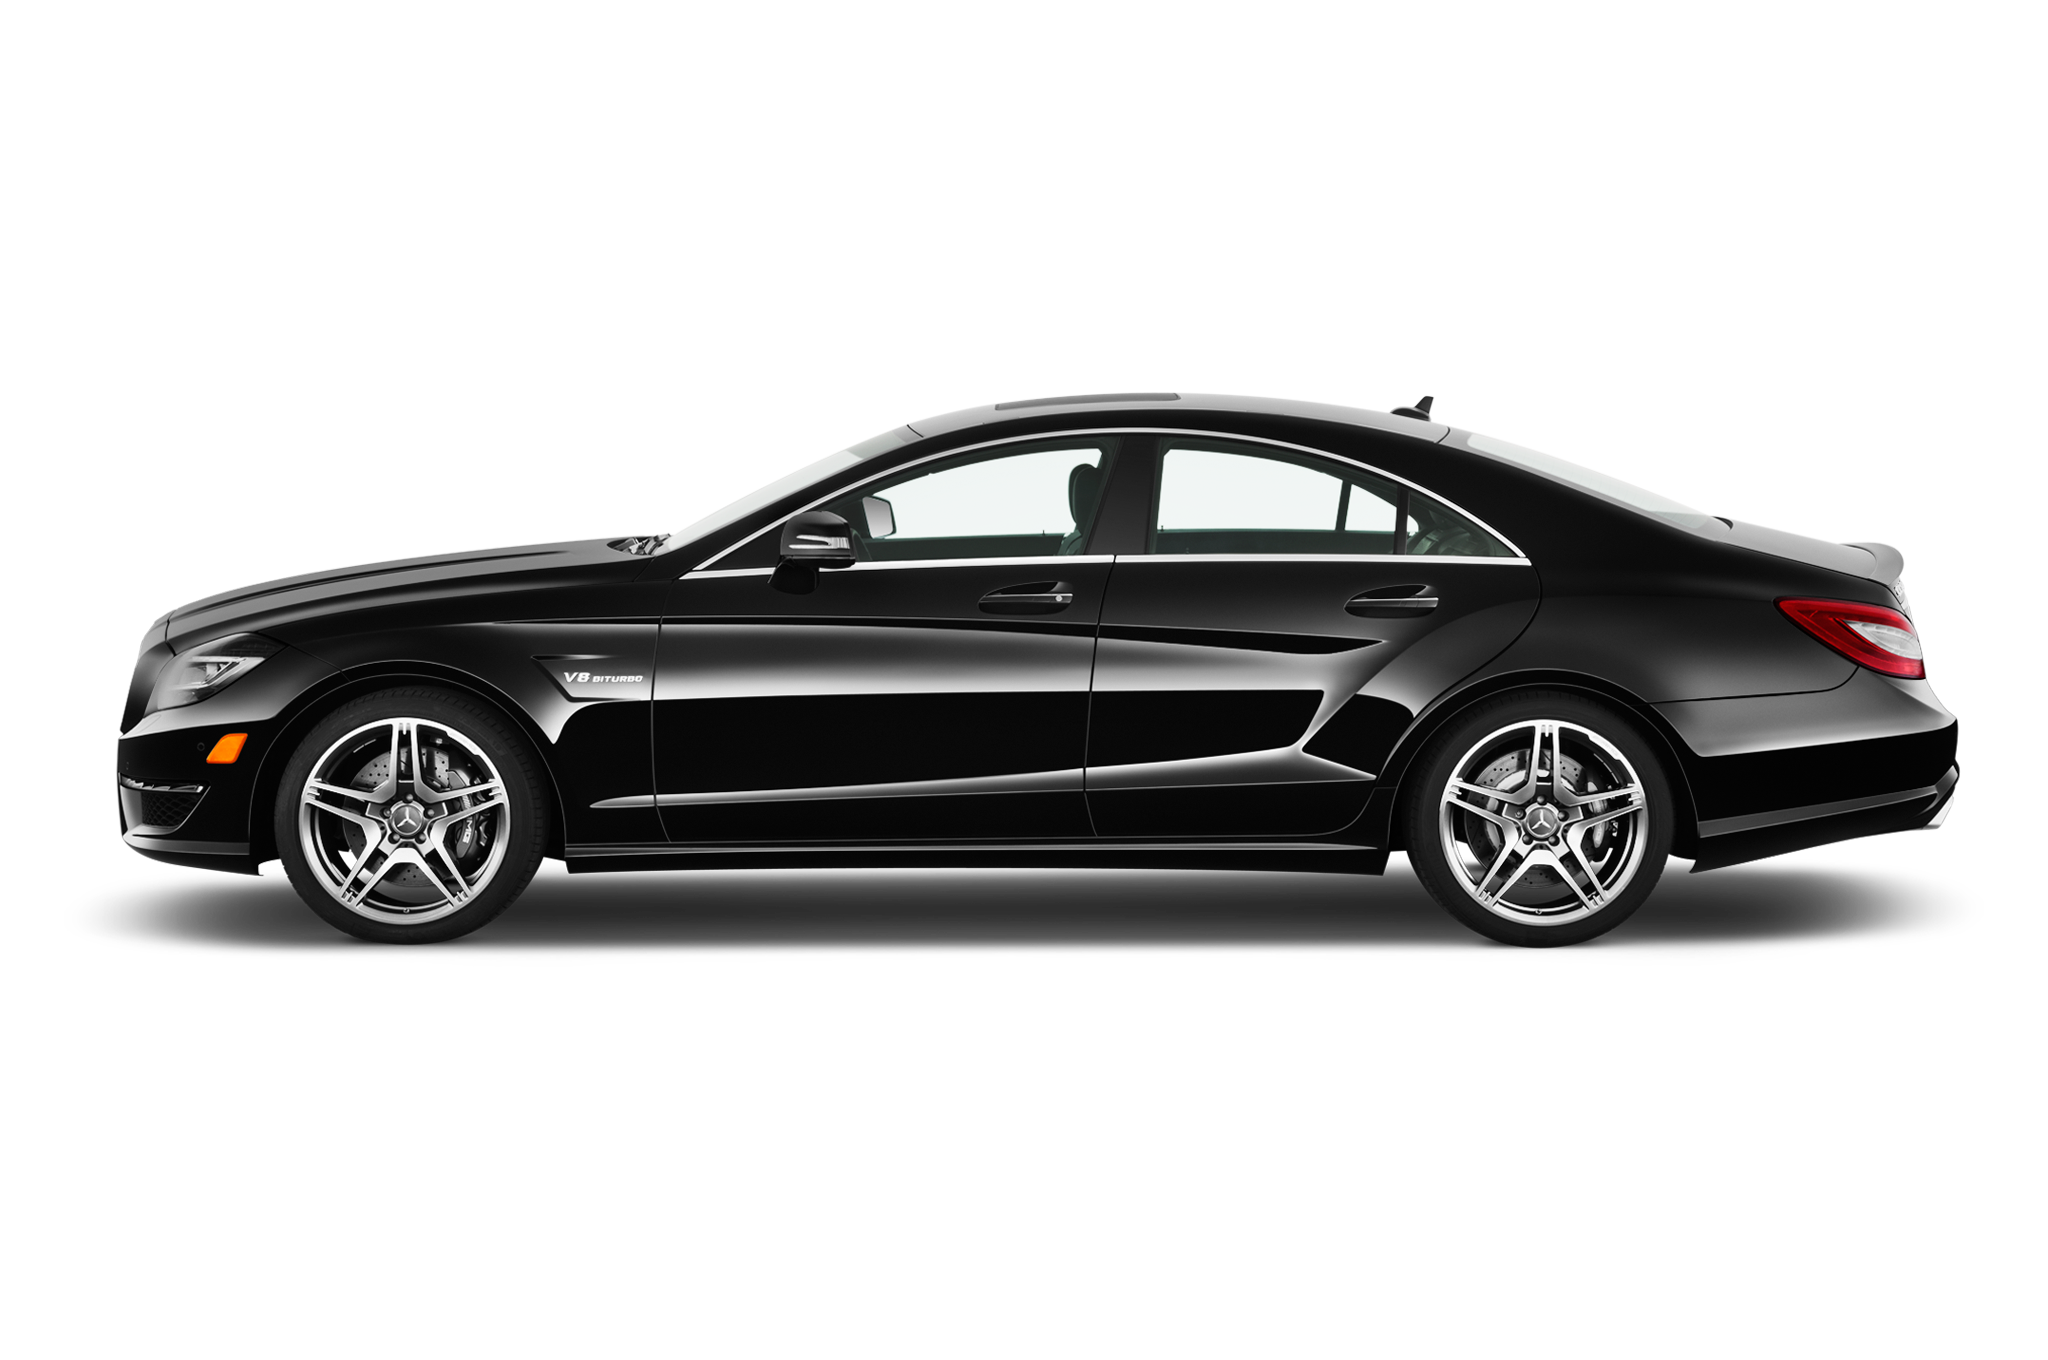 Mercedes-Benz CLS-Class Backgrounds, Compatible - PC, Mobile, Gadgets| 2048x1360 px